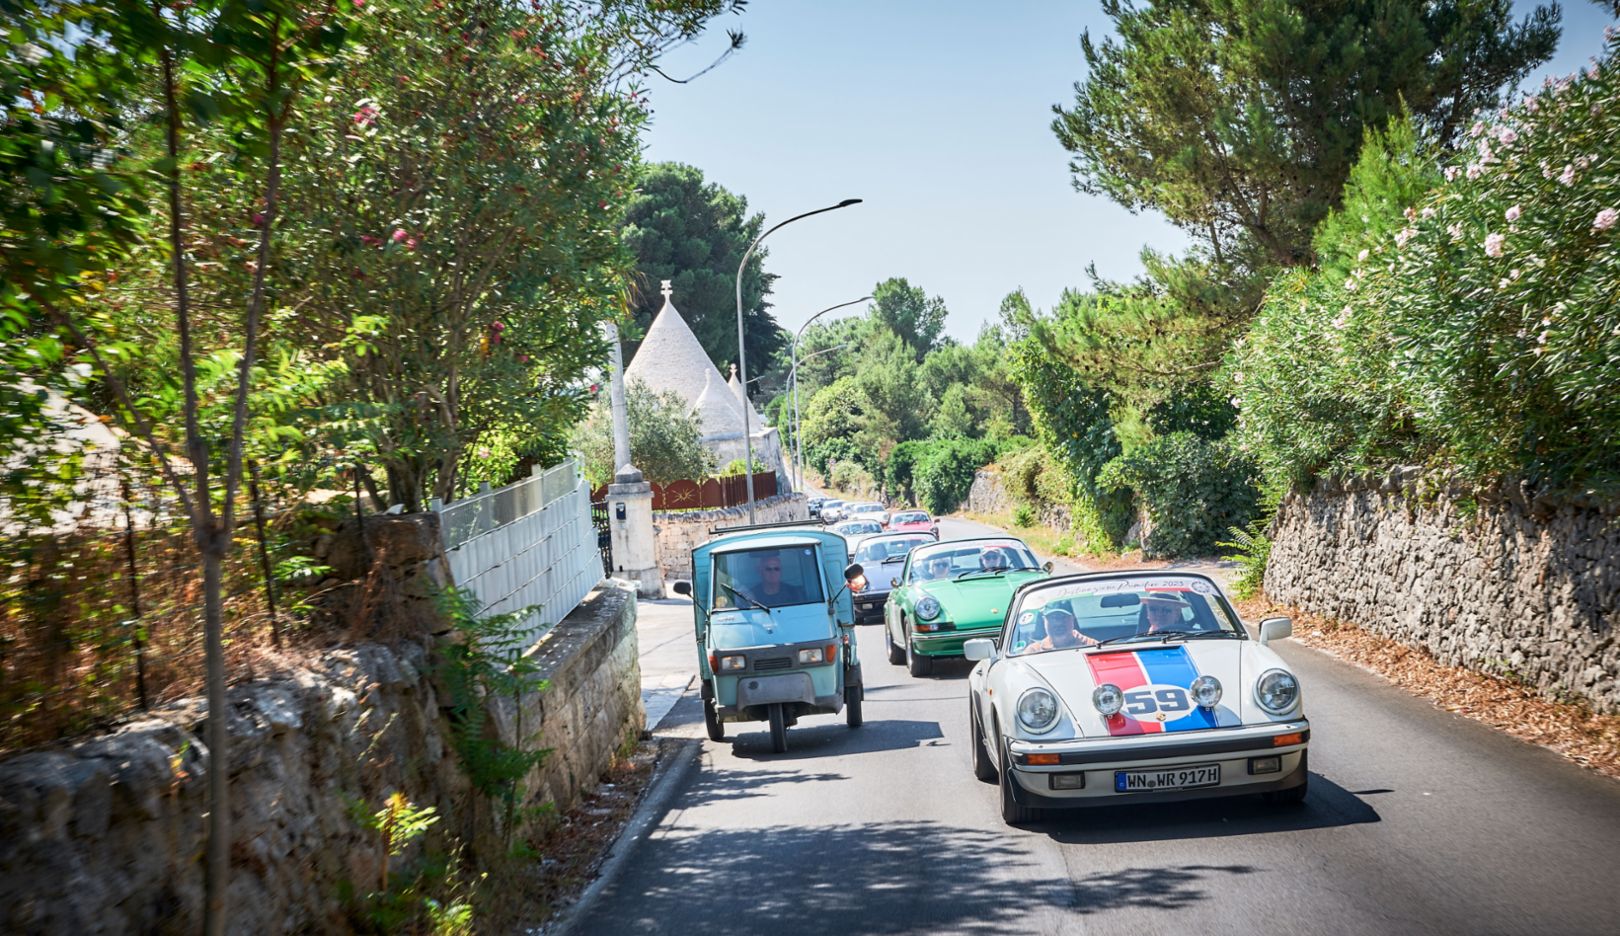 Raduno di classiche: lungo la strada per Martina Franca attraverso la Valle d’Itria, la colonna di Porsche supera un’Ape Piaggio a tre ruote.